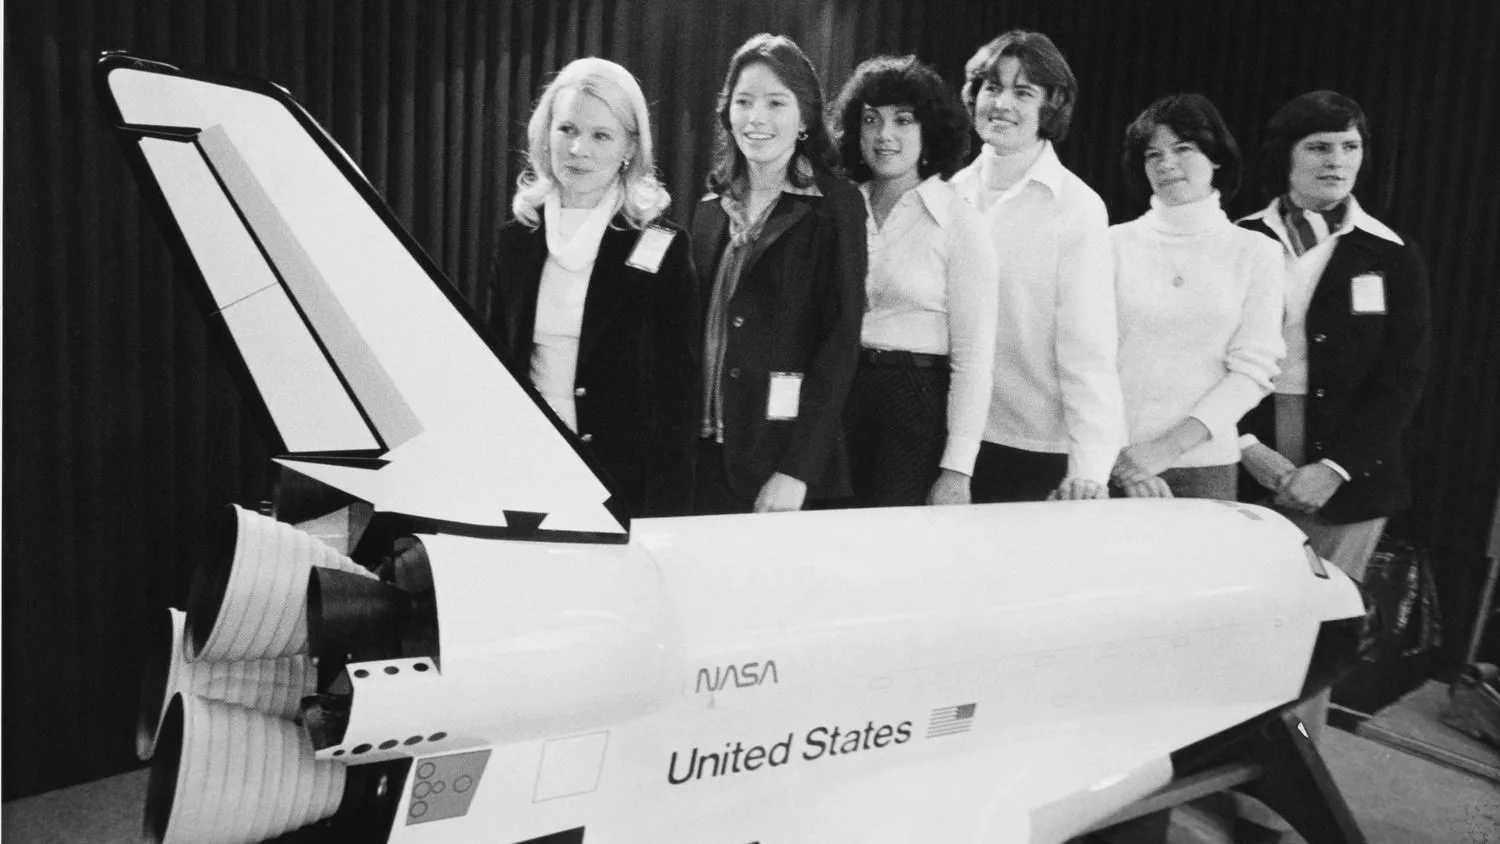 Mehr über den Artikel erfahren Wir haben mehr als 50 weibliche Führungskräfte aus der Weltraumbranche um Ratschläge gebeten. Hier ist, was sie uns sagten